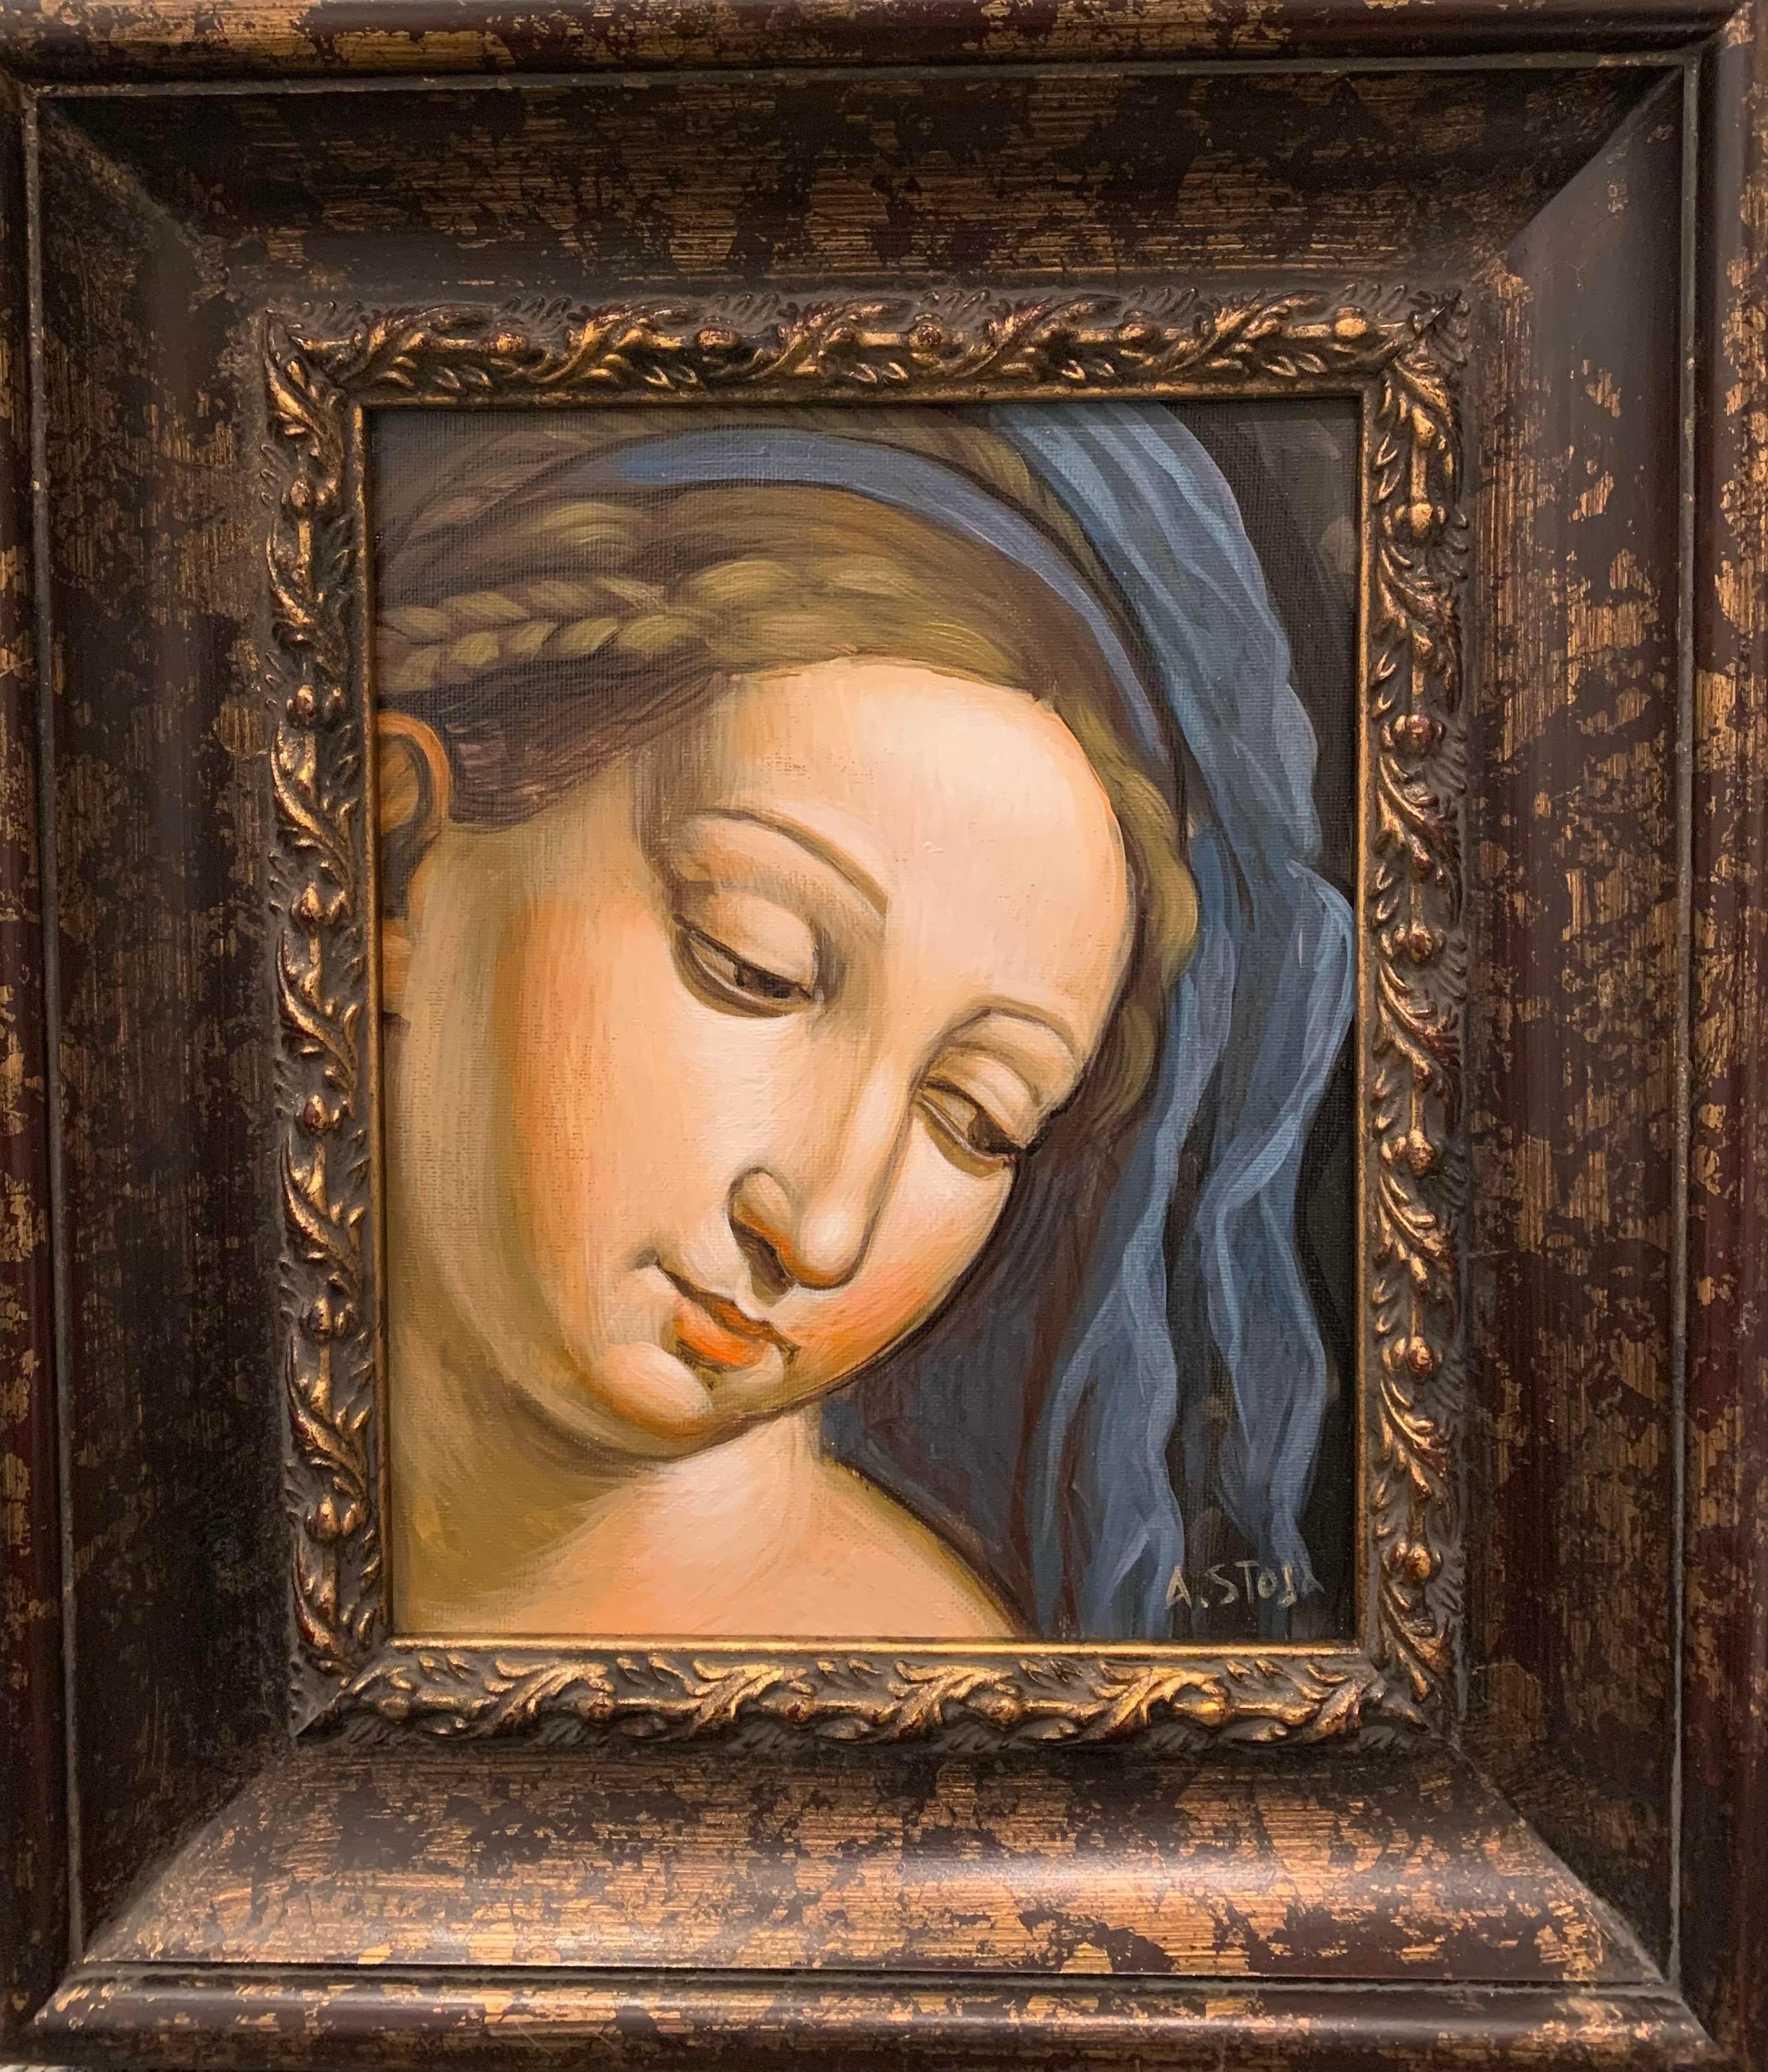 Altin Stoja Portrait Painting – Acryl auf Leinwand – Madonna aus der italienischen Renaissance